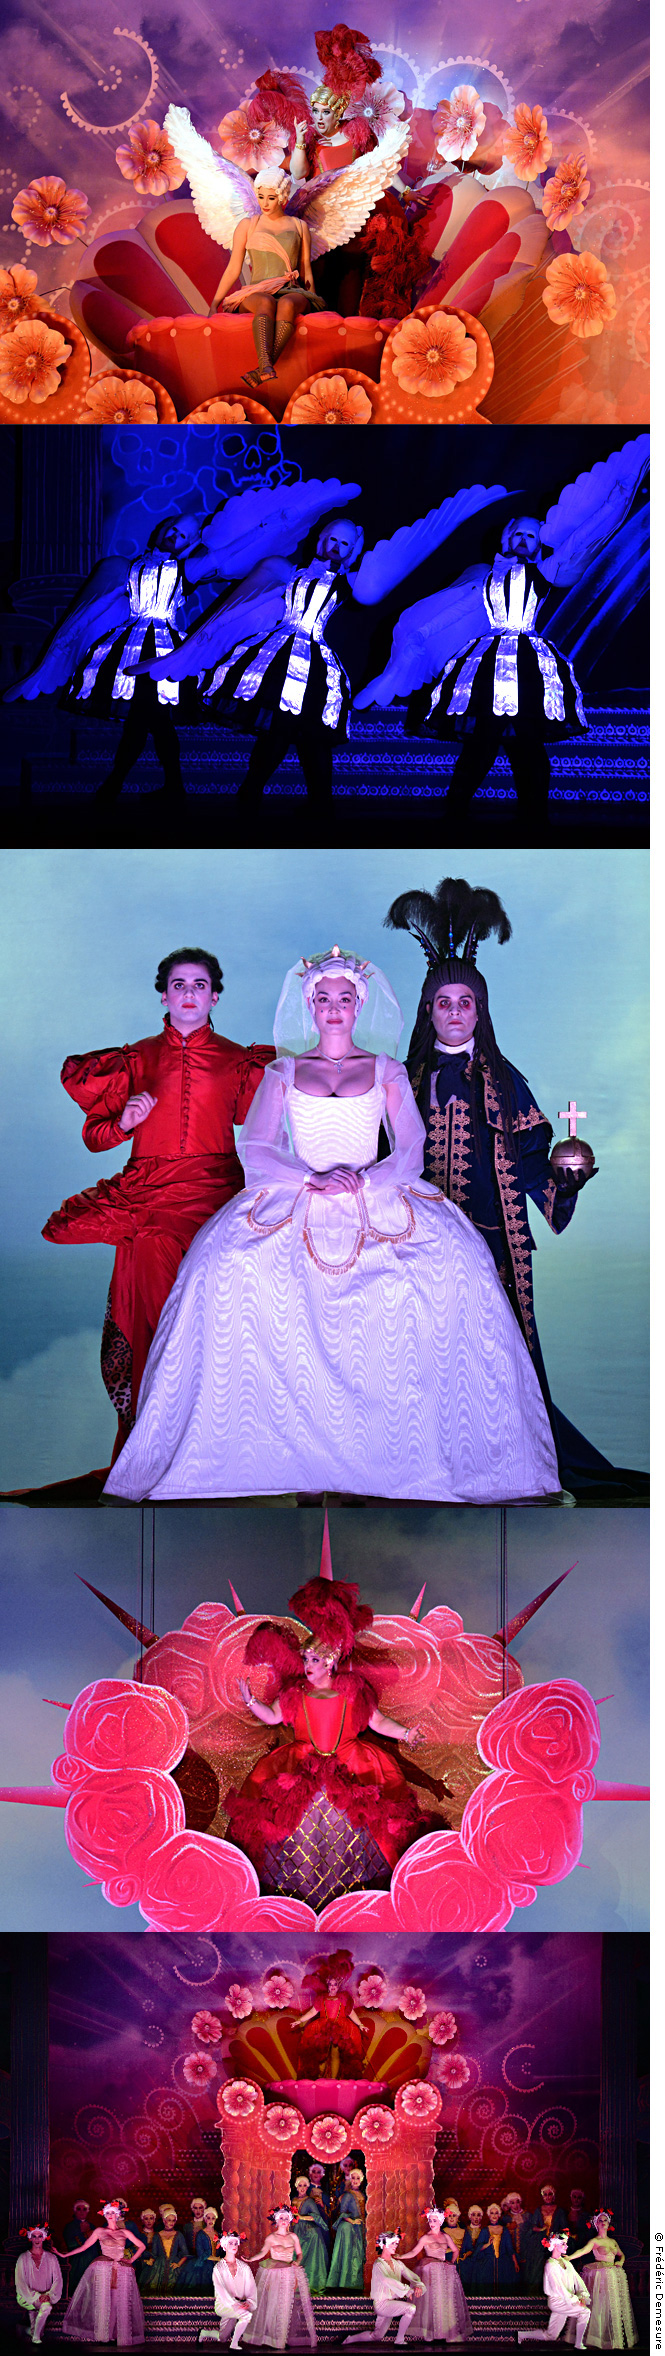 Patronage, coupe et essayage des costumes. Dardanus, Opéra de Rameau mis en scène par Michel Fau, 2015